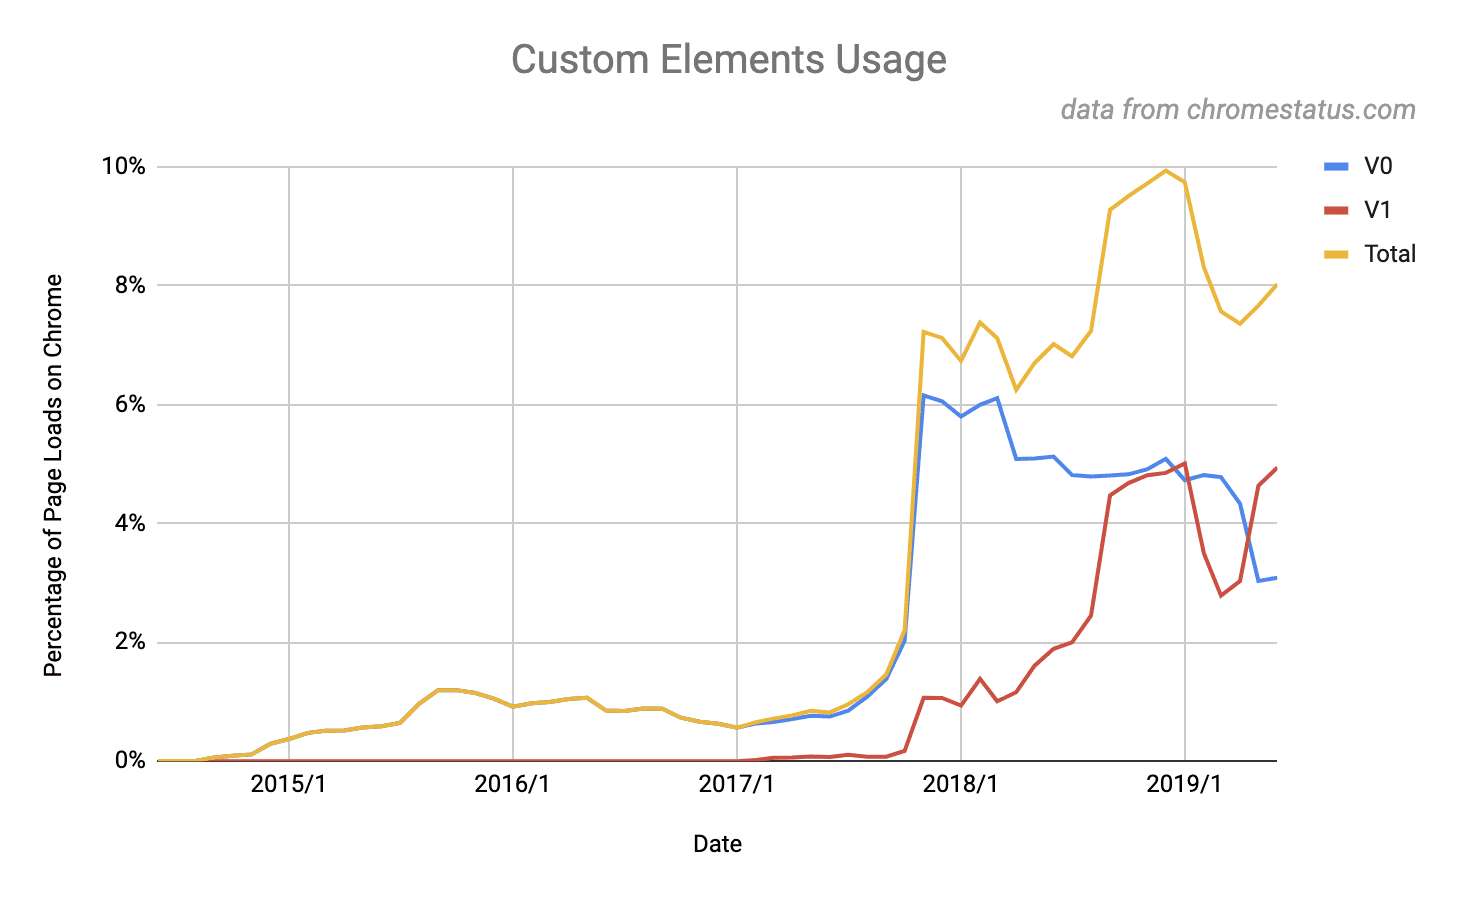 Gráfico que muestra que el 8% de los sitios utiliza elementos personalizados de la versión 1. Esta cifra eclipsa el punto máximo del 5% para los elementos personalizados de la v0.